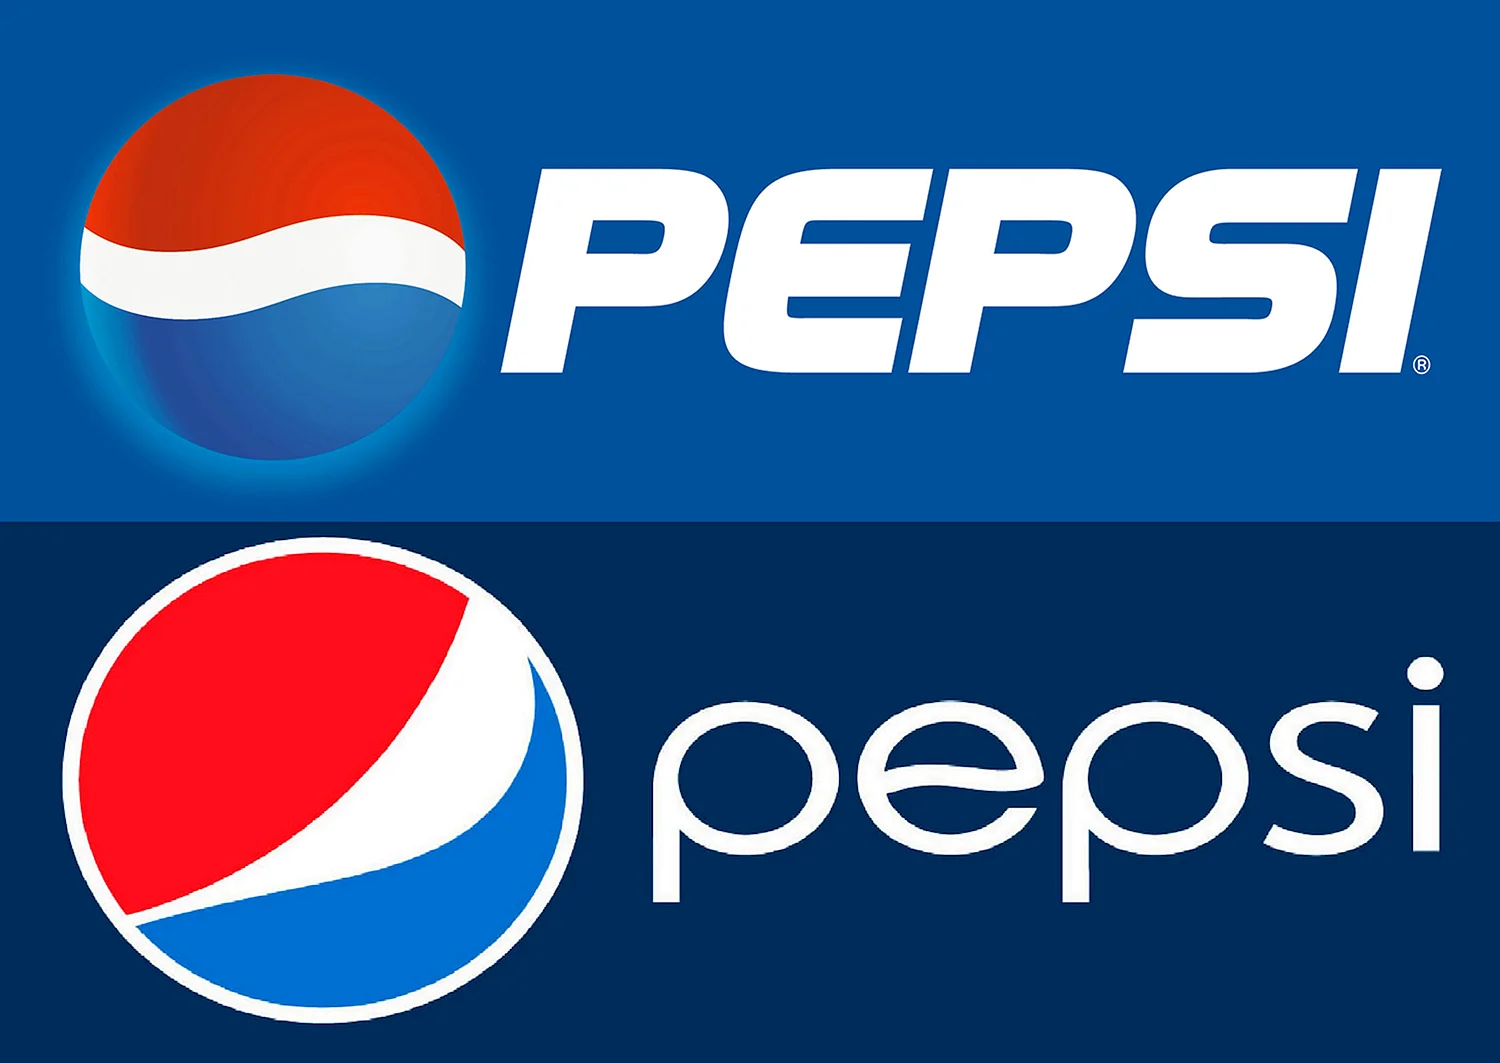 Логотип пепси новый